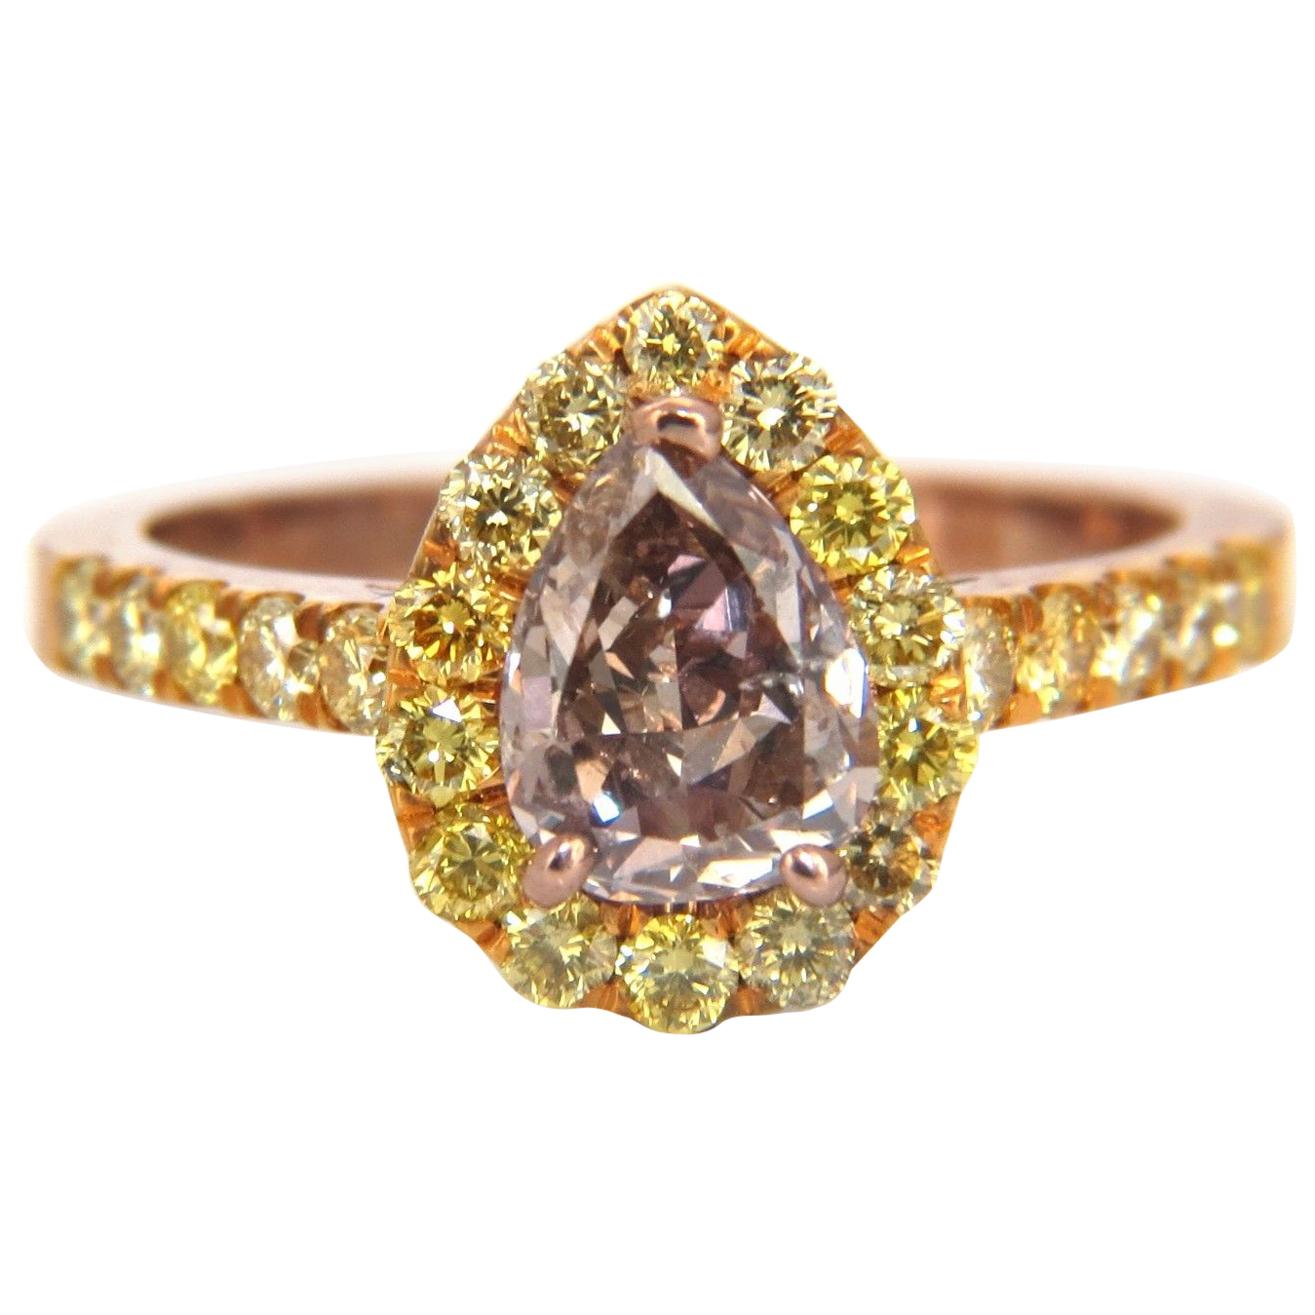 GIA Certified 2.04 Carat Fancy Pink Diamond Ring 18 Karat